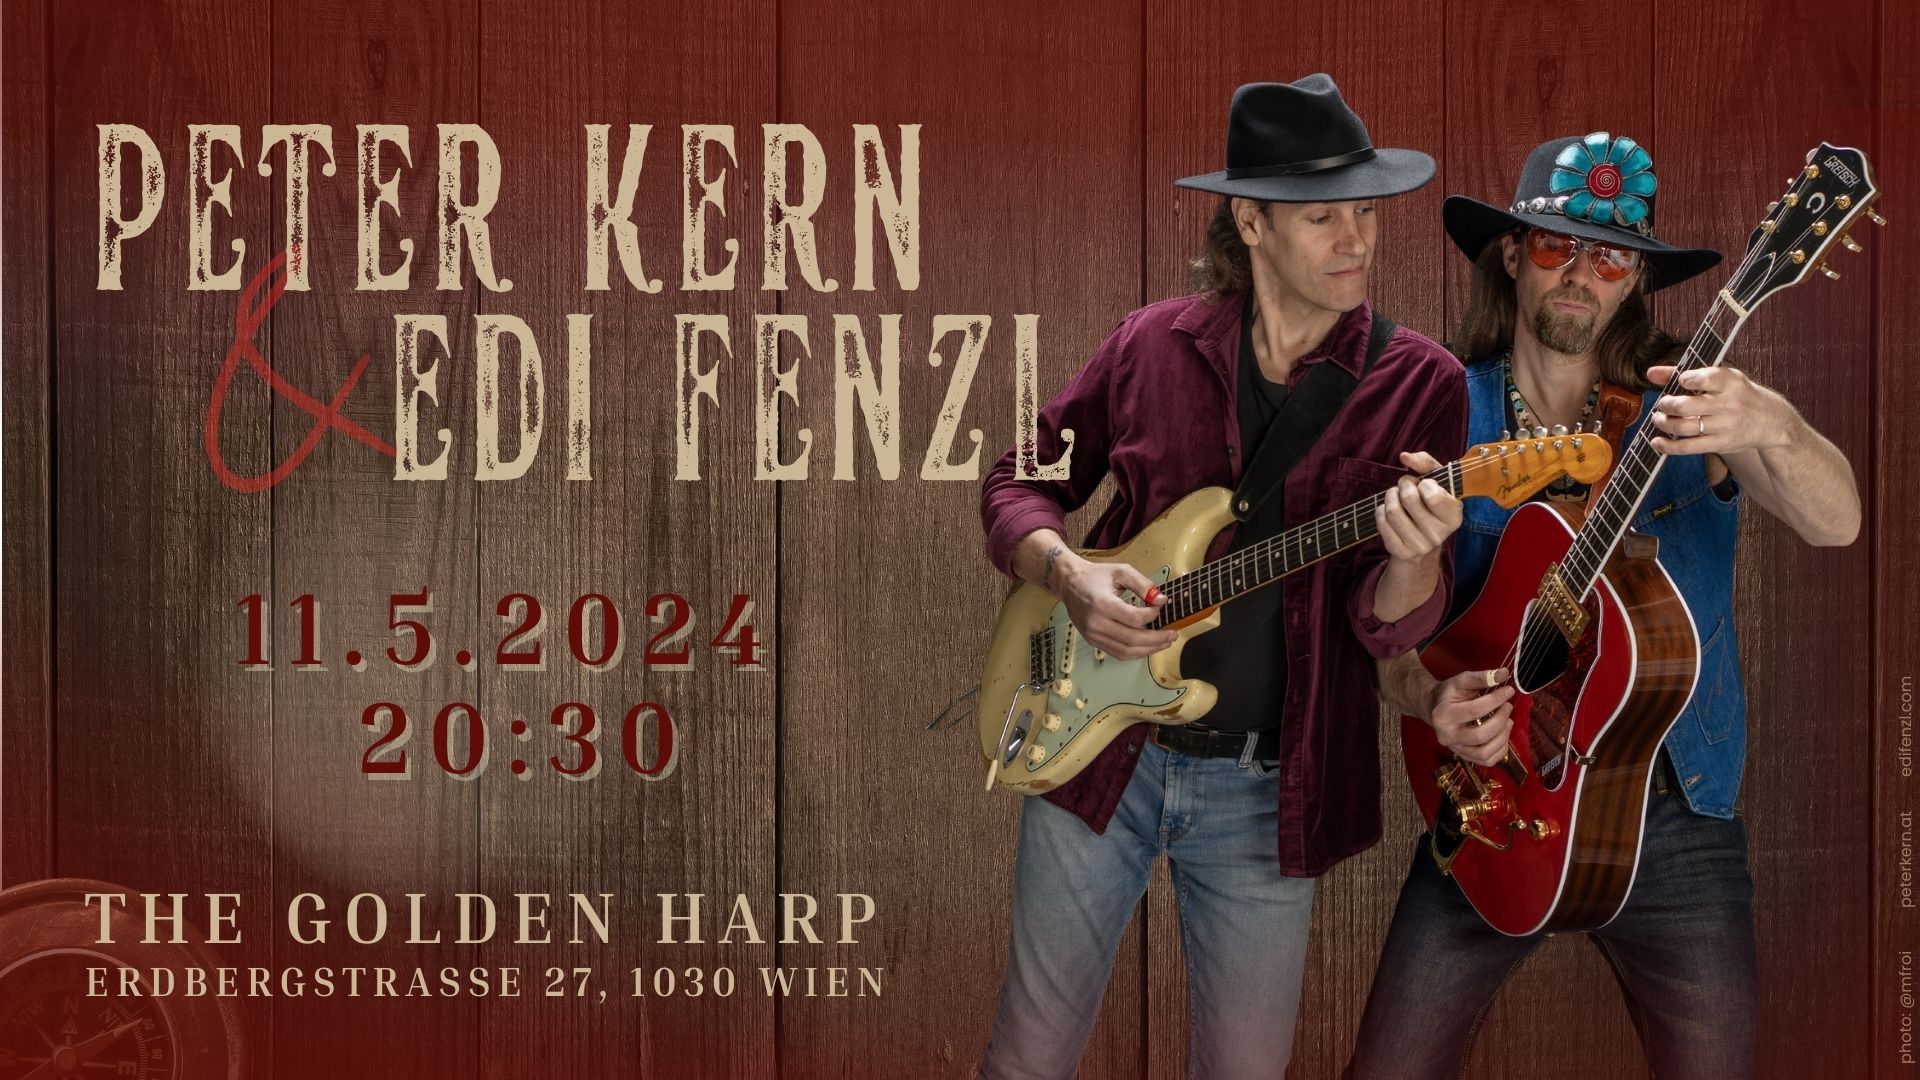 Peter Kern & Edi Fenzl @ Golden Harp